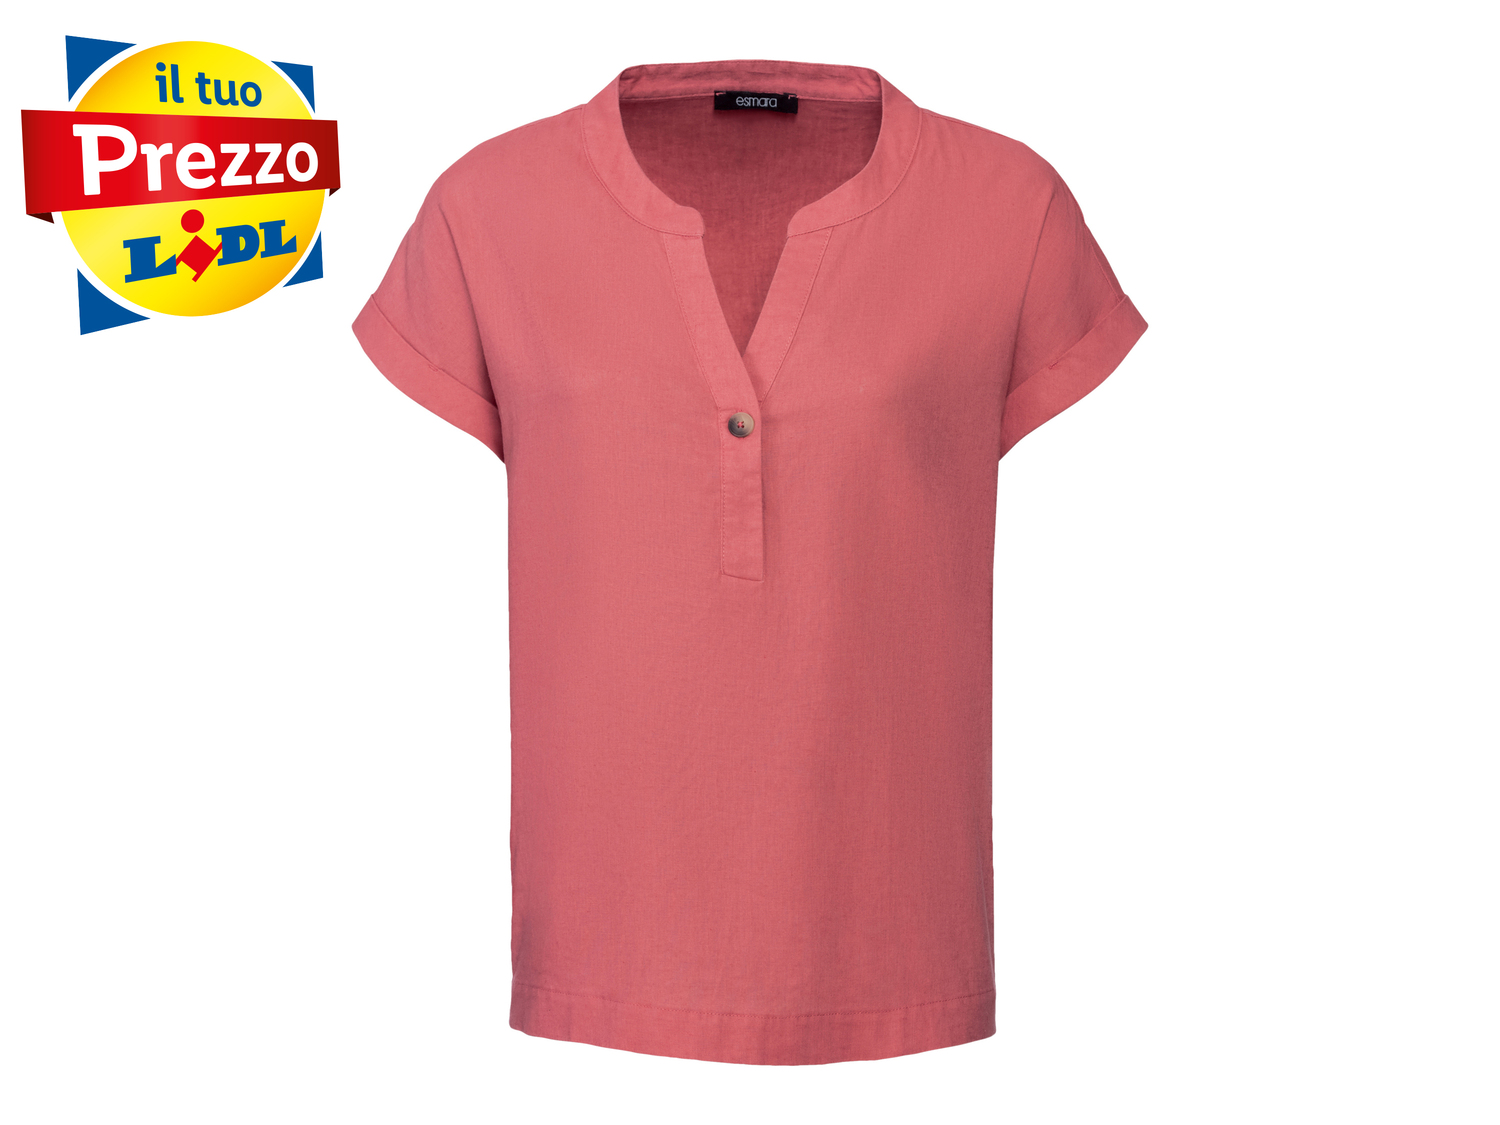 Camicia in lino da donna Esmara, prezzo 8.99 &#8364; 
Misure: 38-48
Taglie disponibili

Caratteristiche

- ...